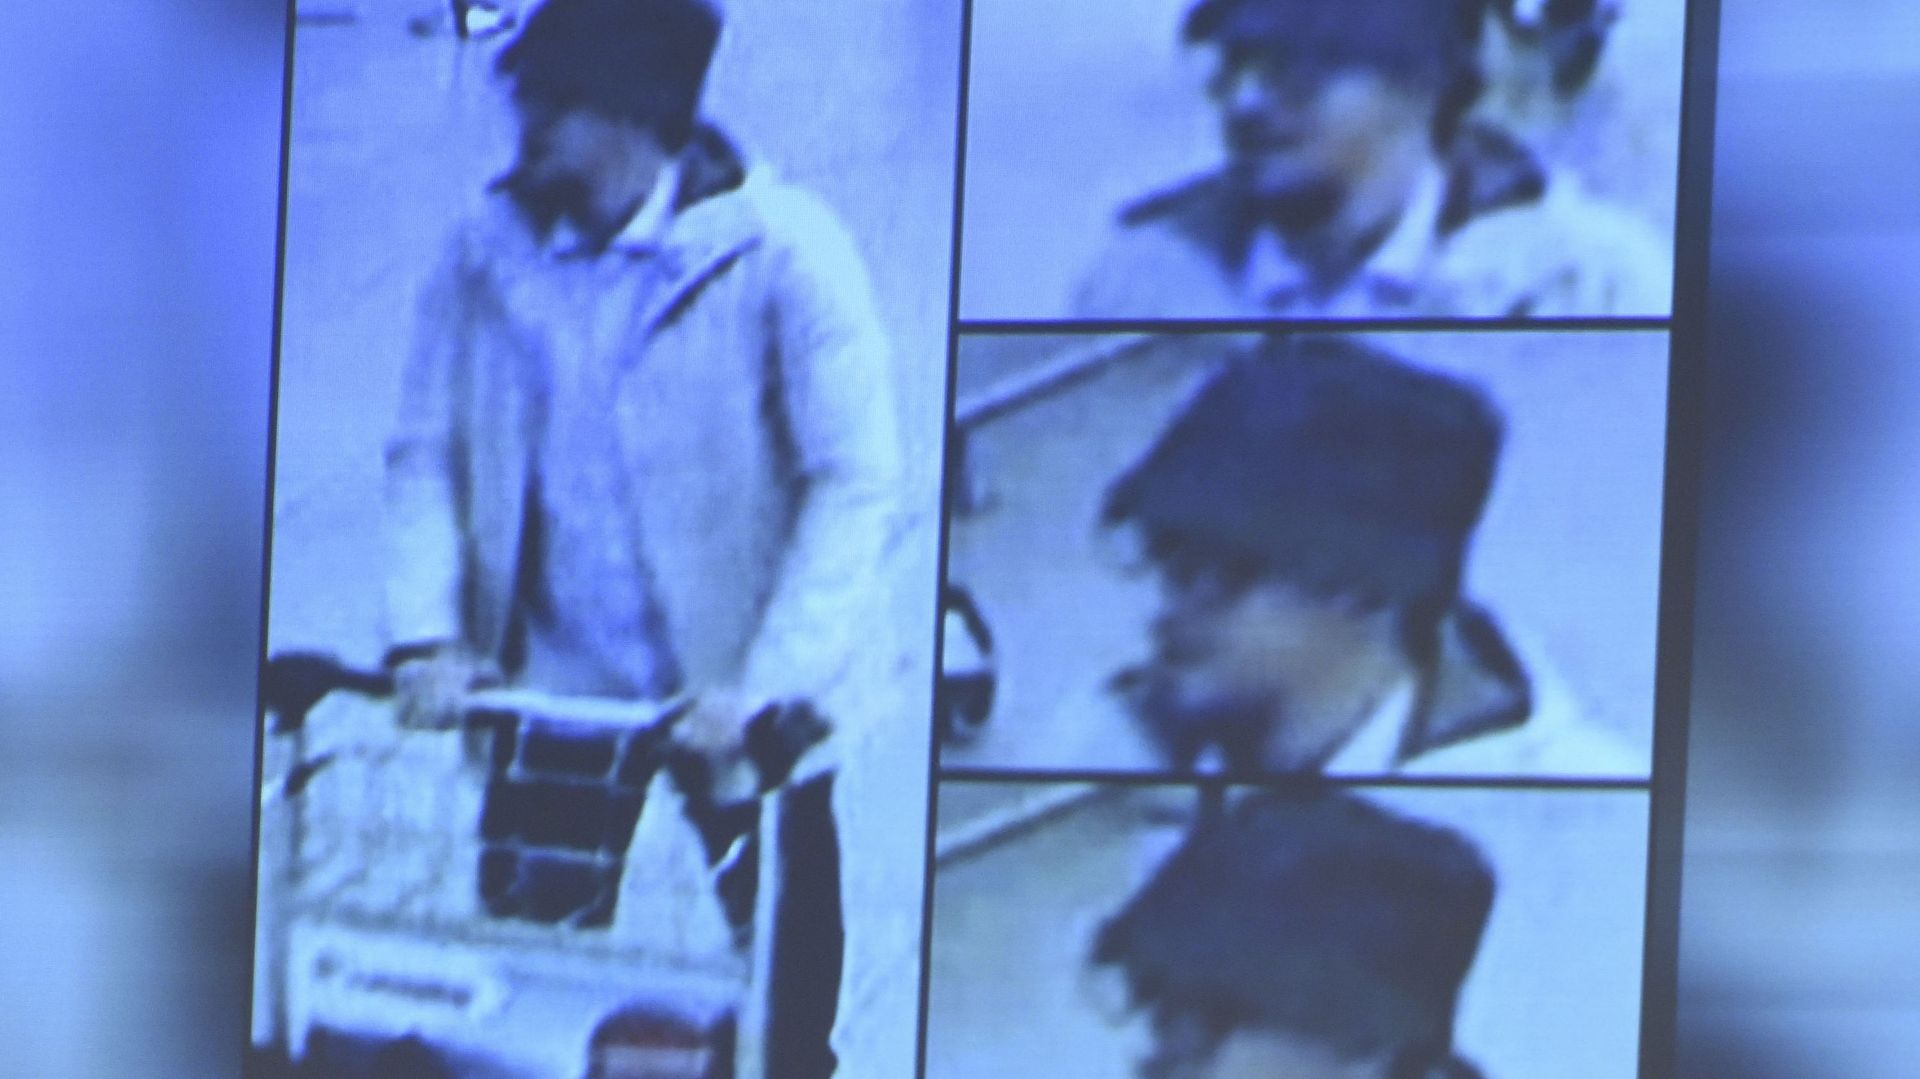 "L'homme au chapeau", le troisième suspect de Zaventem, est identifié comme étant Mohamed Abrini.